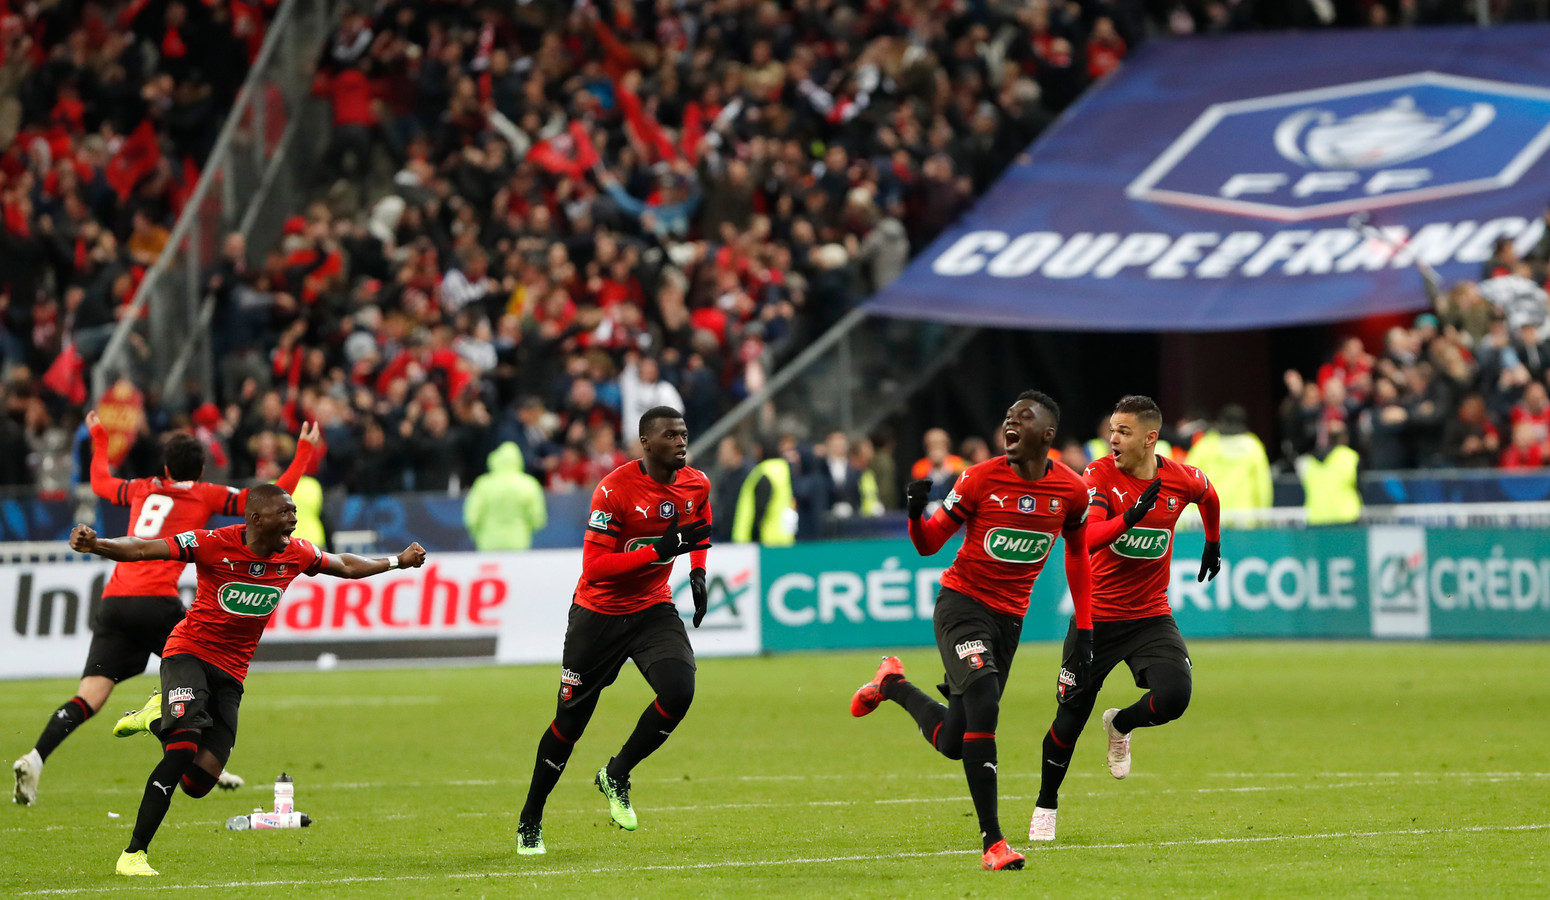 Verbinding verbroken goedkoop beet Rennes verrast PSG in bekerfinale, rood voor Mbappé | Foto | AD.nl